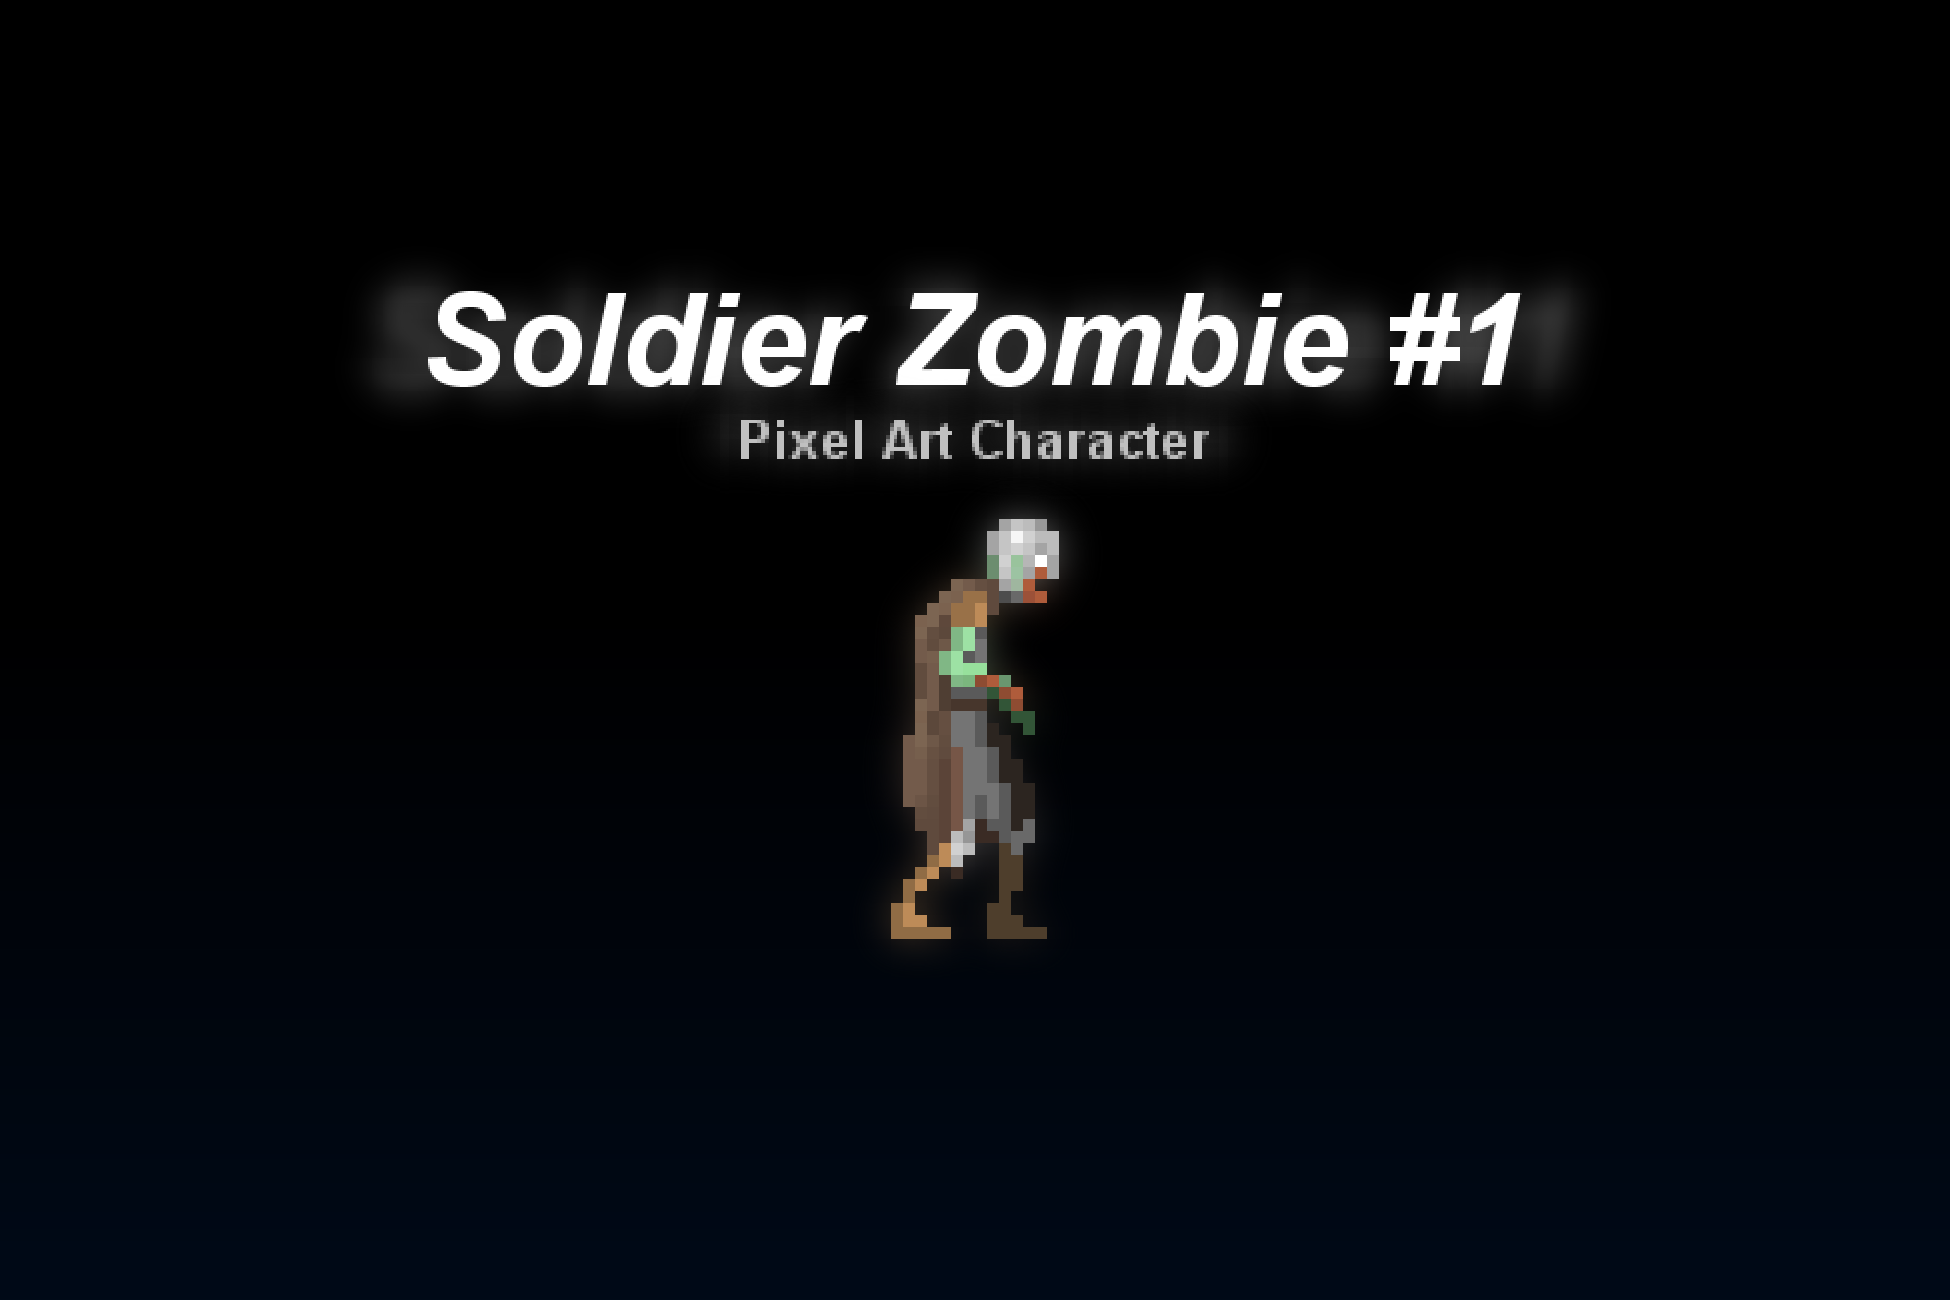 Soldier Zombie #1 - Pixel Art Character